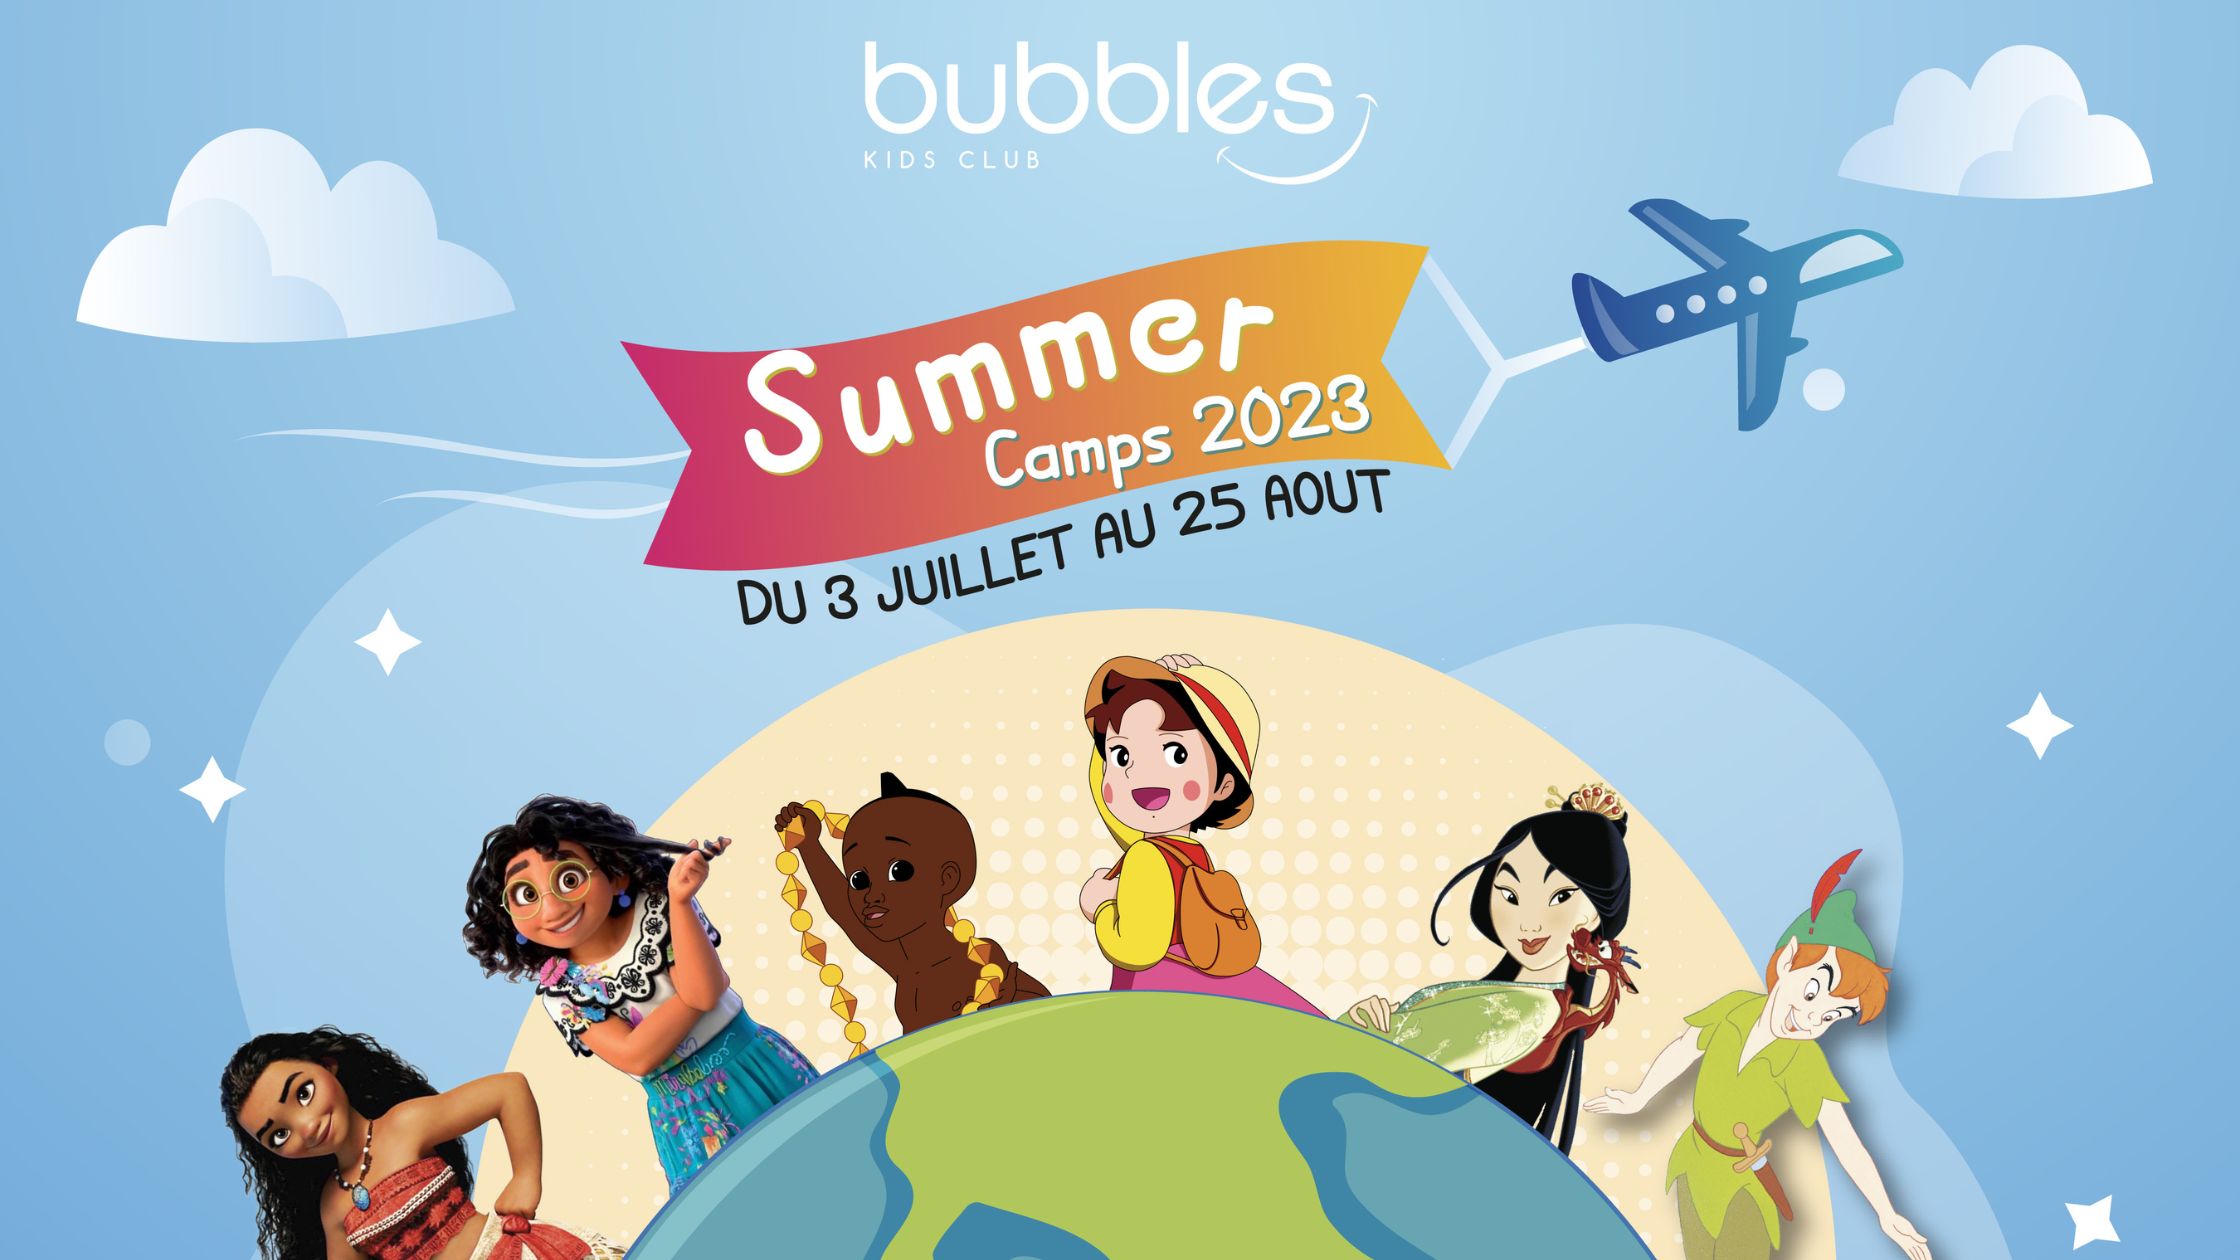 summer camps geneva 2023 bubbles